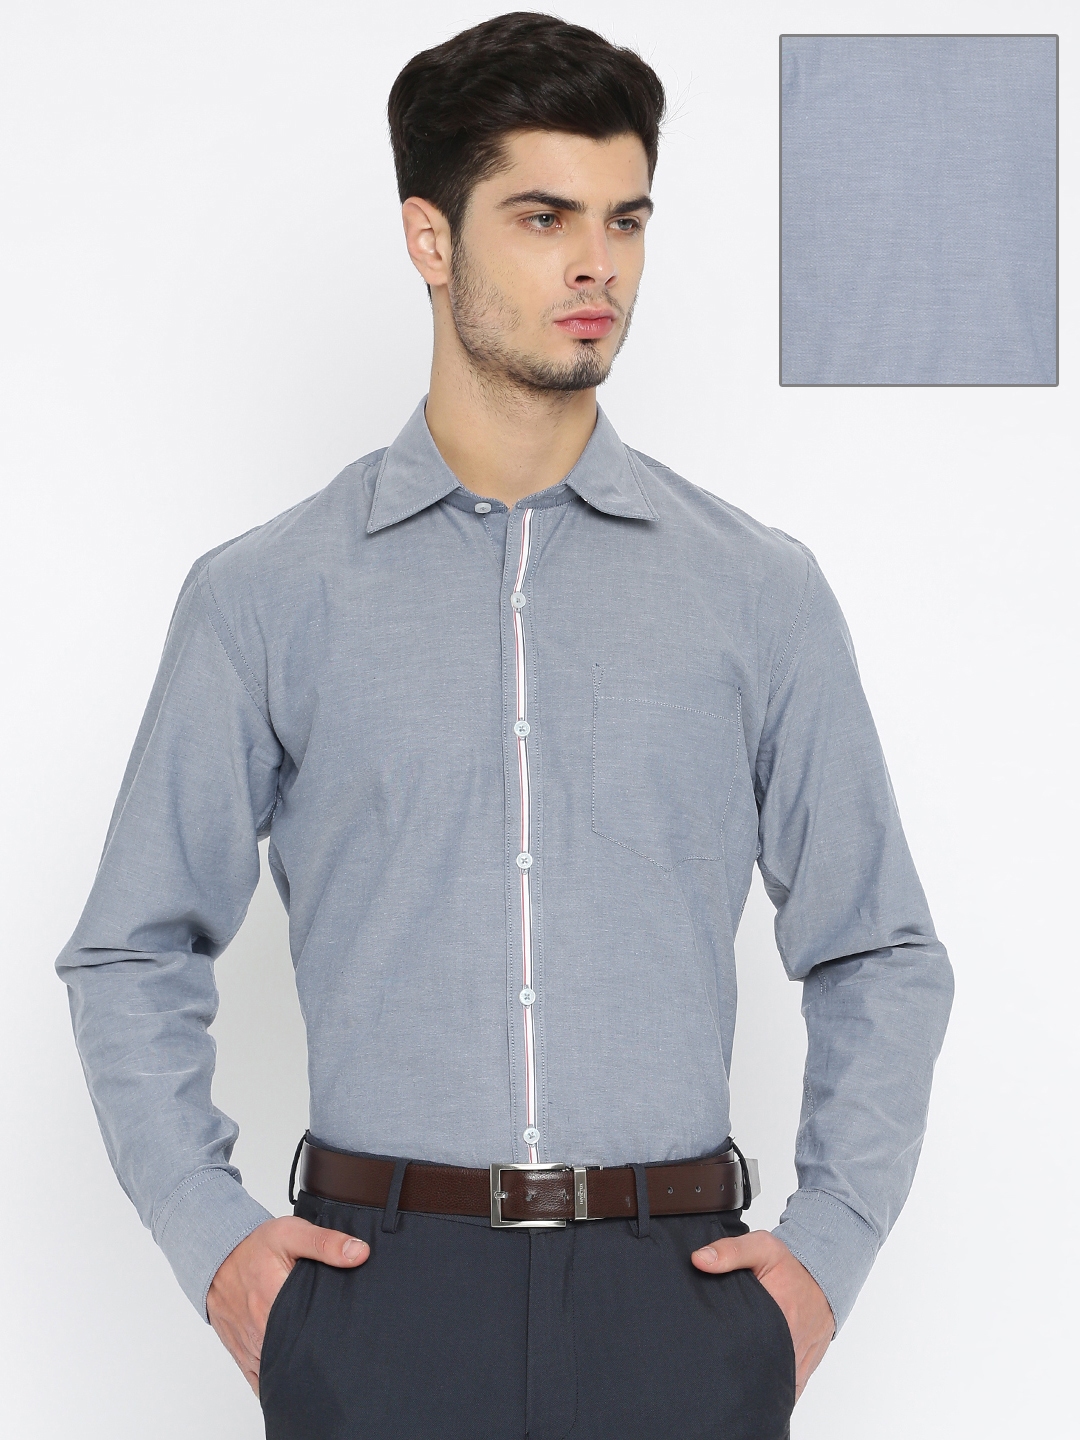 Buy American Crew Men Grey Slim Fit Solid Formal Shirt - Shirts for Men ...